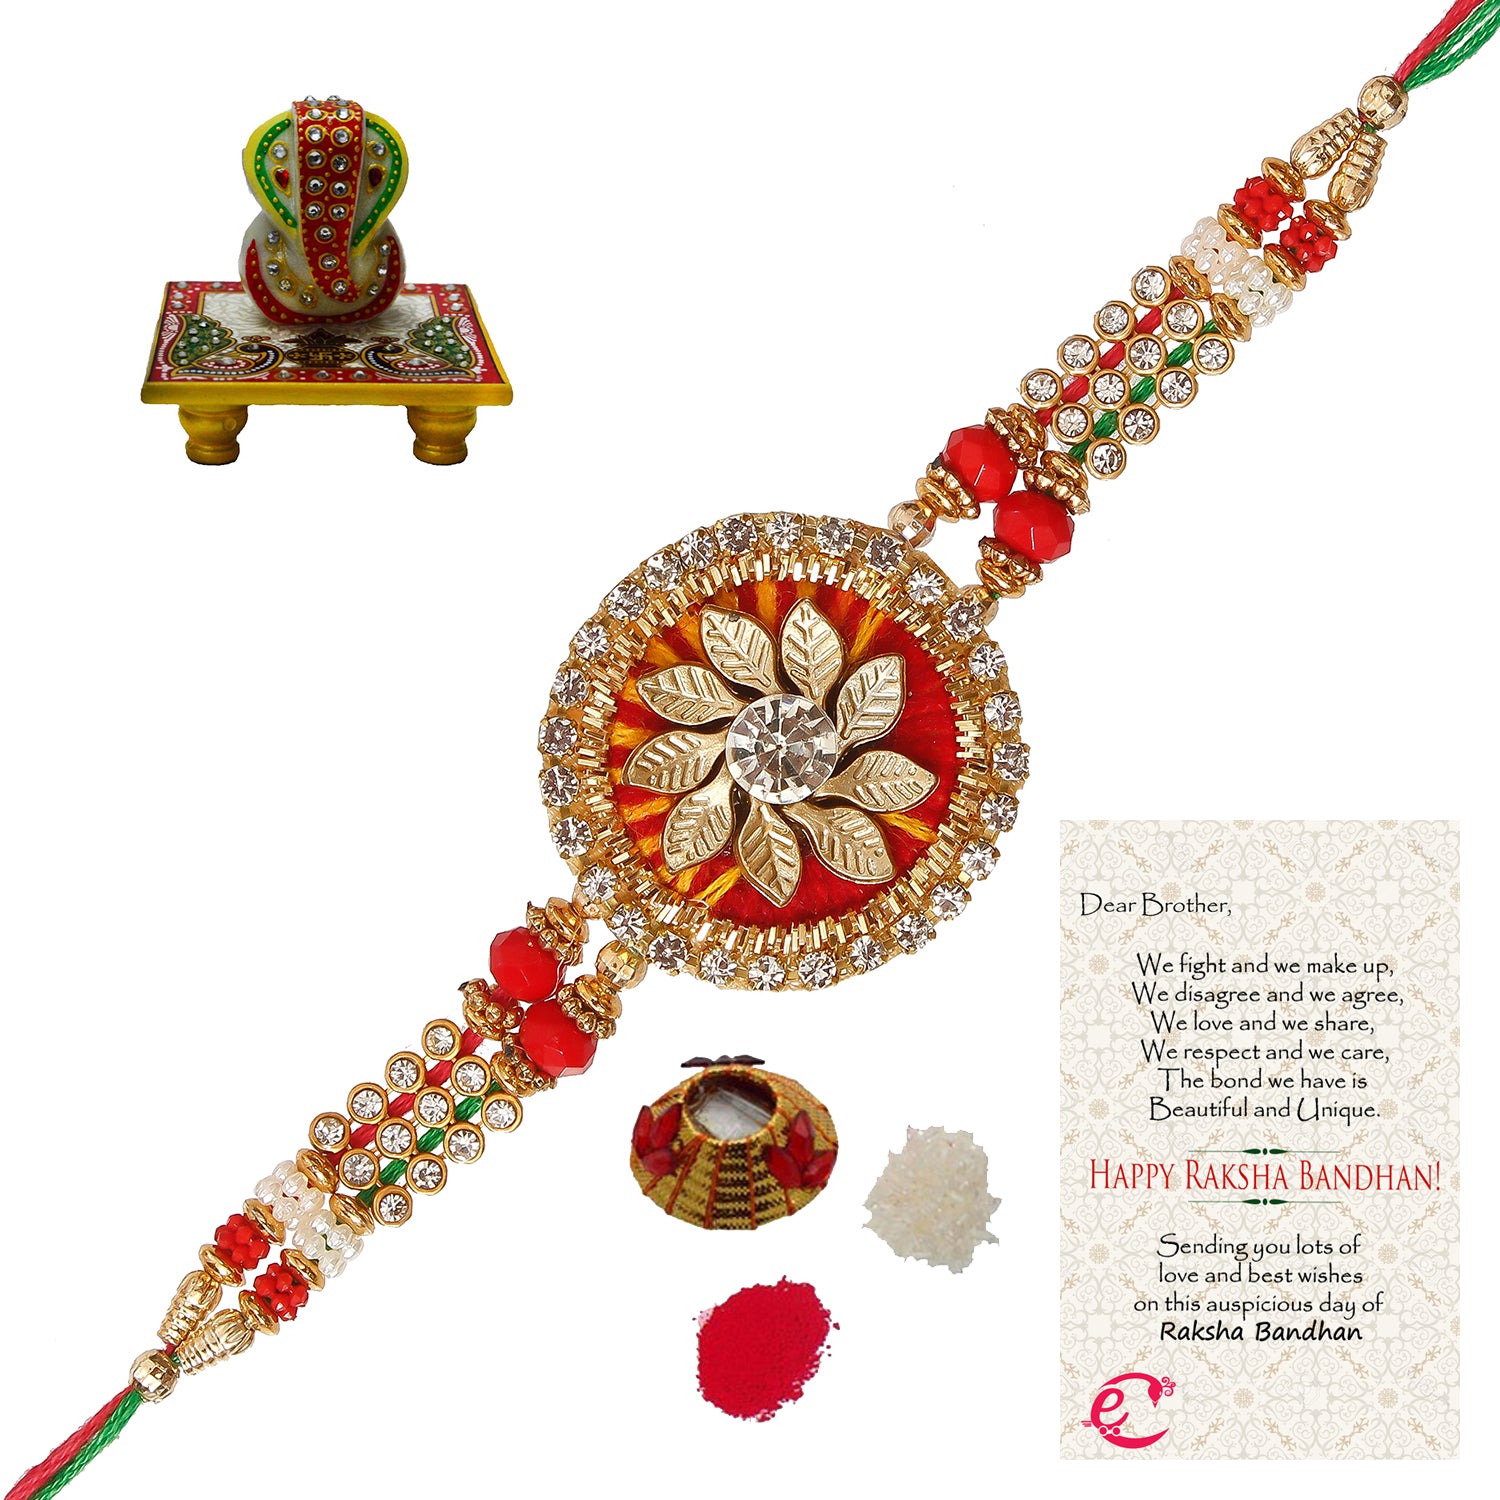 Designer Rakhi with Lord Ganesha on Marble Chowki and Roli Tikka Matki, Best Wishes Greeting Card